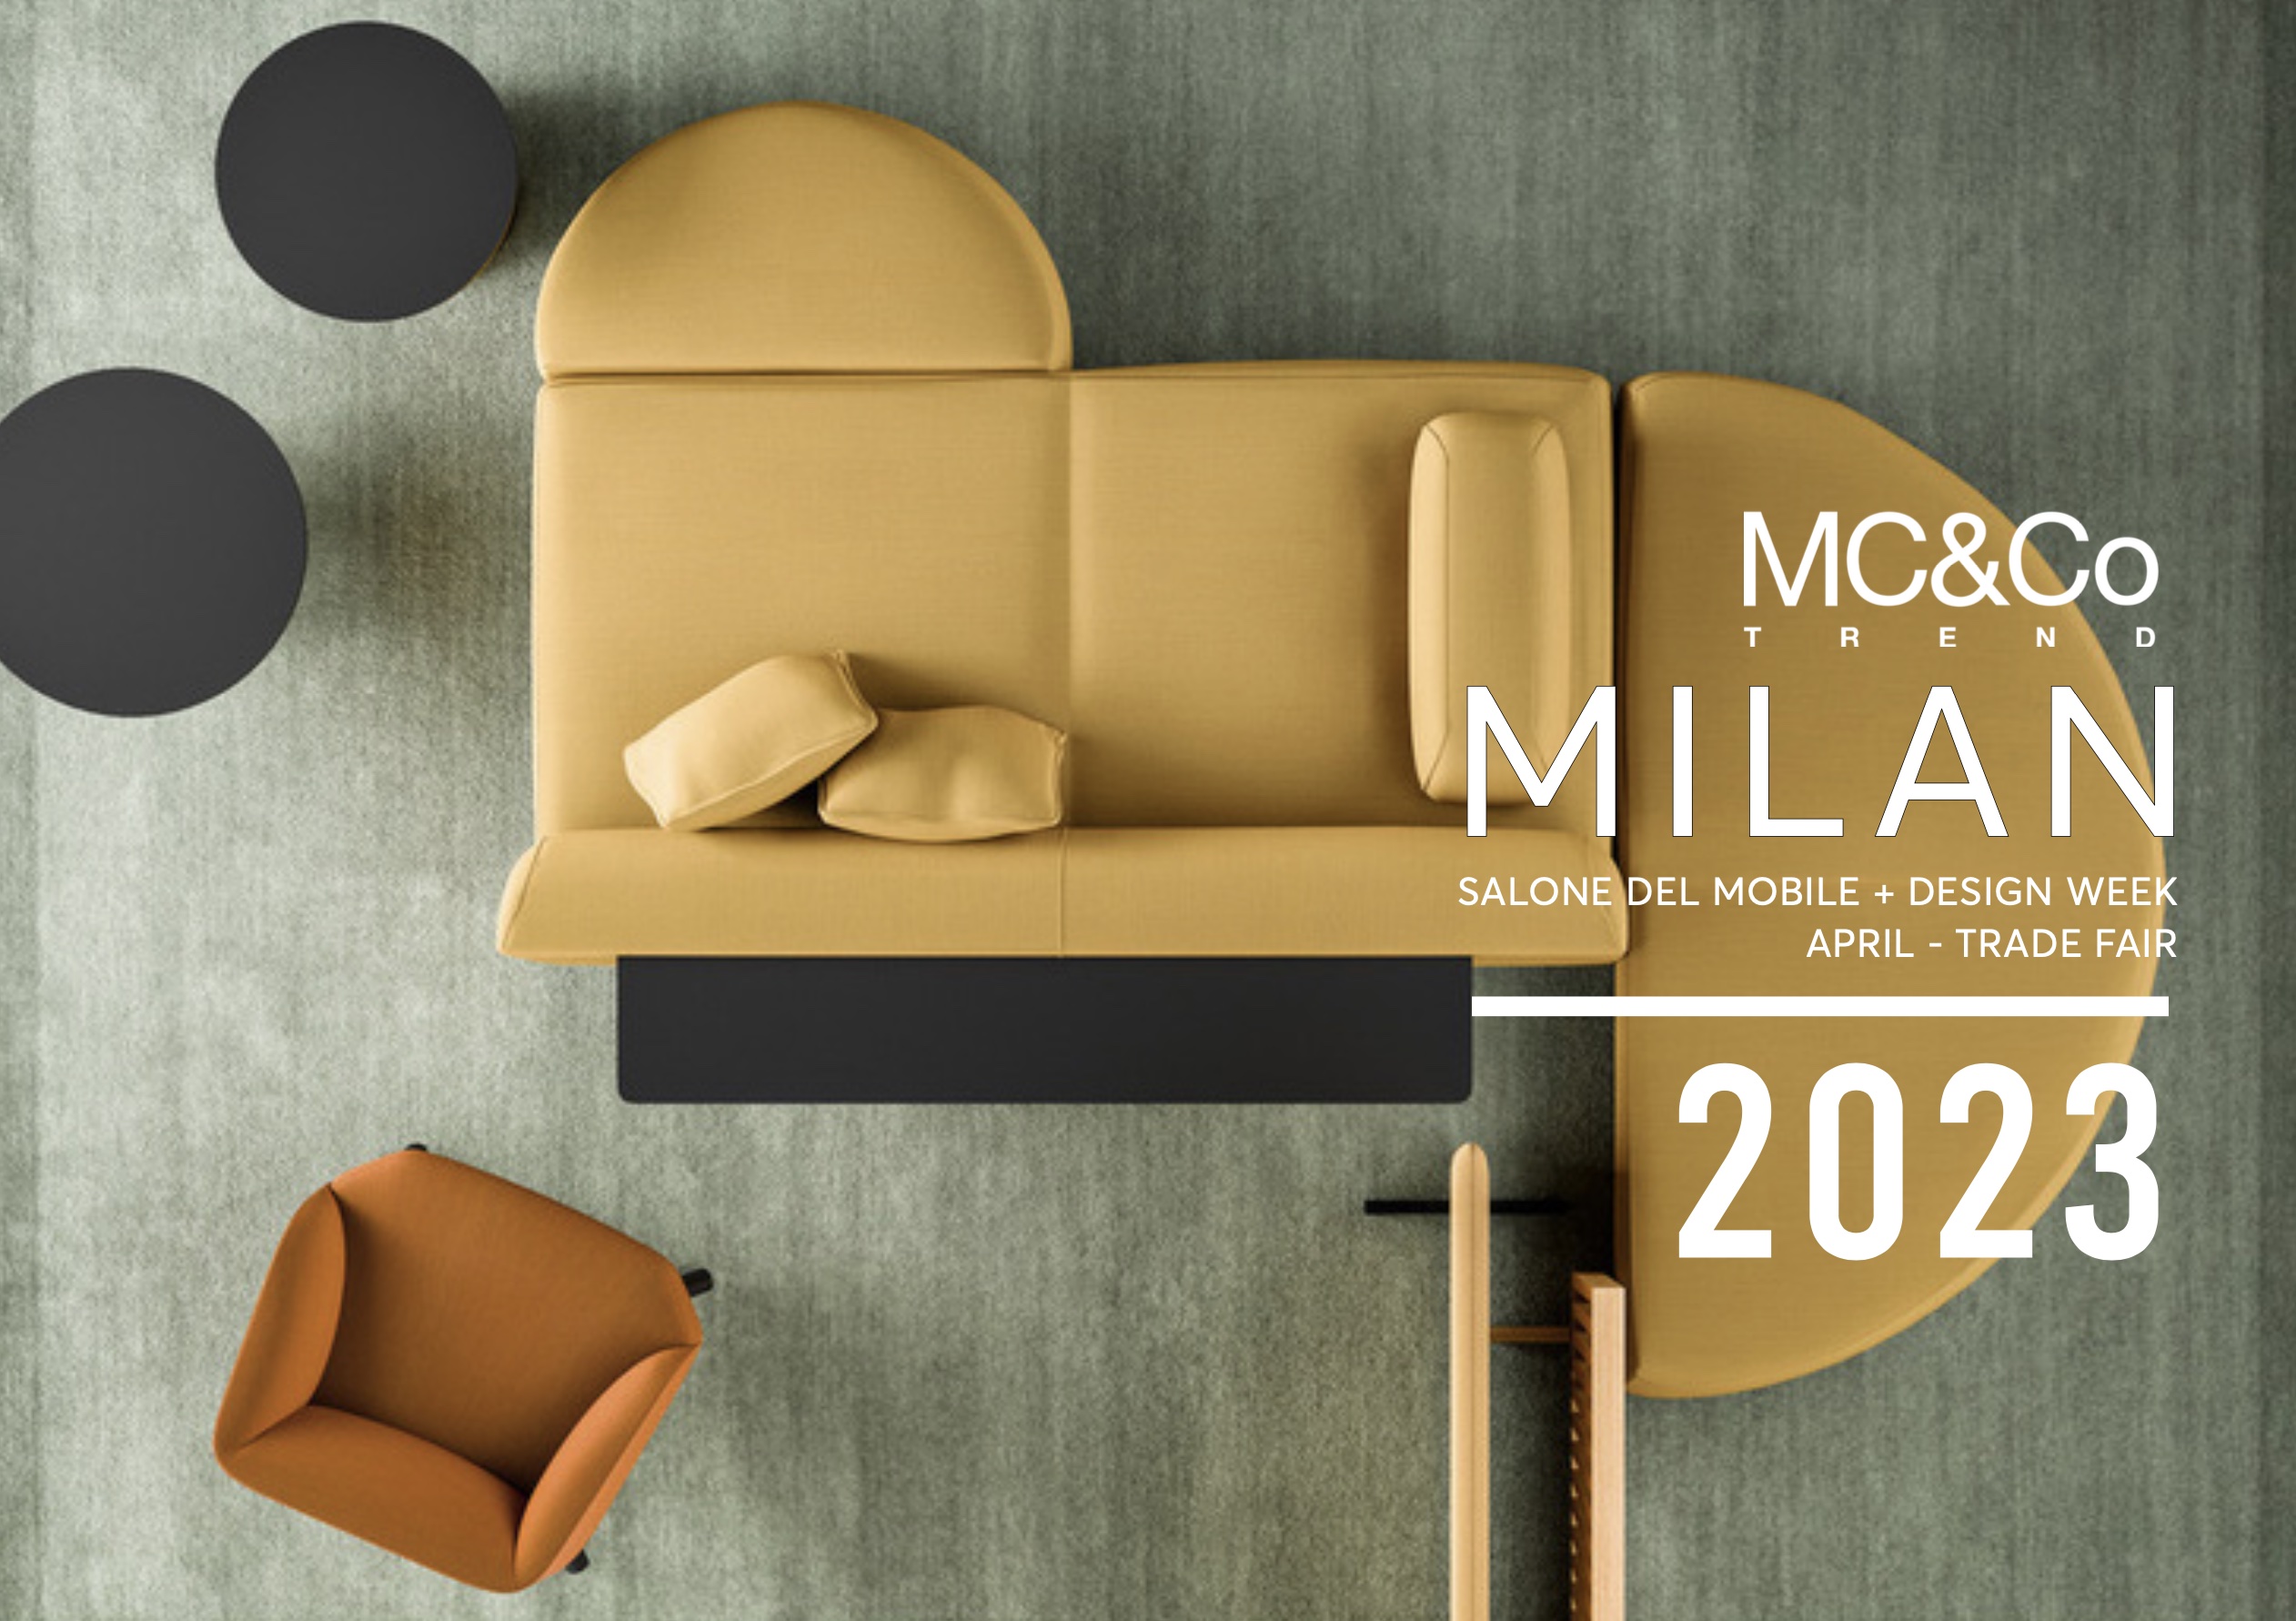 Salone del Mobile.Milano 2023: a new trade-fair experience